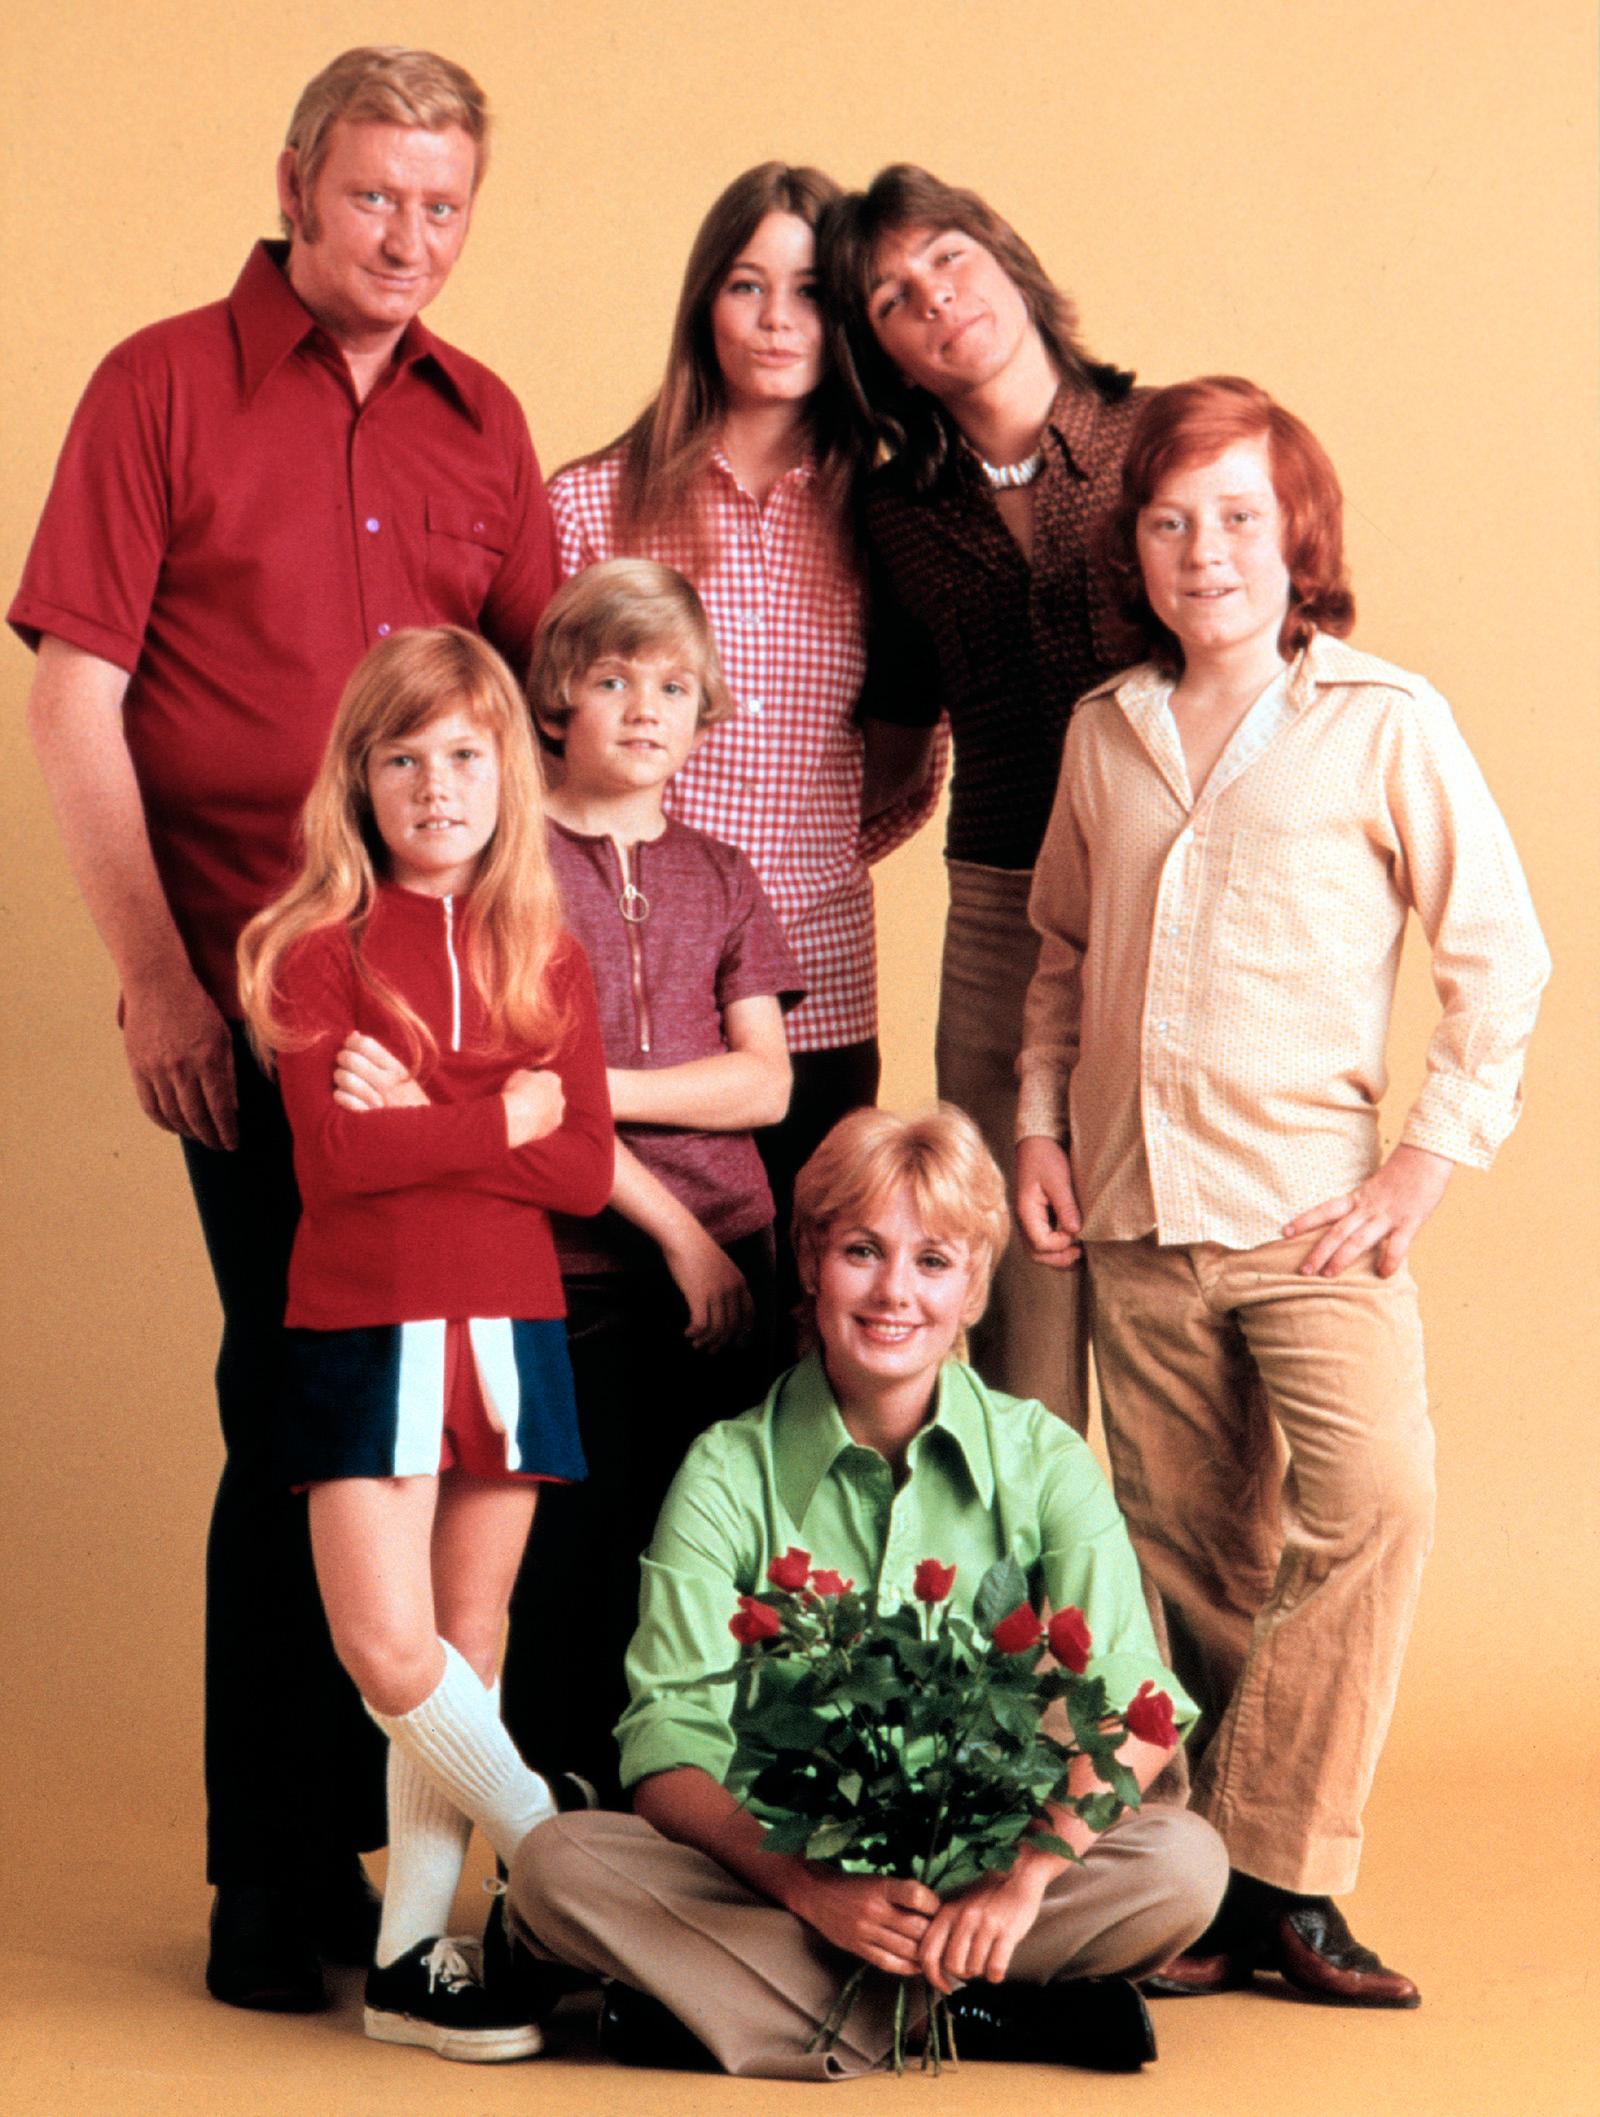 ”The Partridge family”, David Cassidy trea från vänster spelade rollen som Keith Partridge.